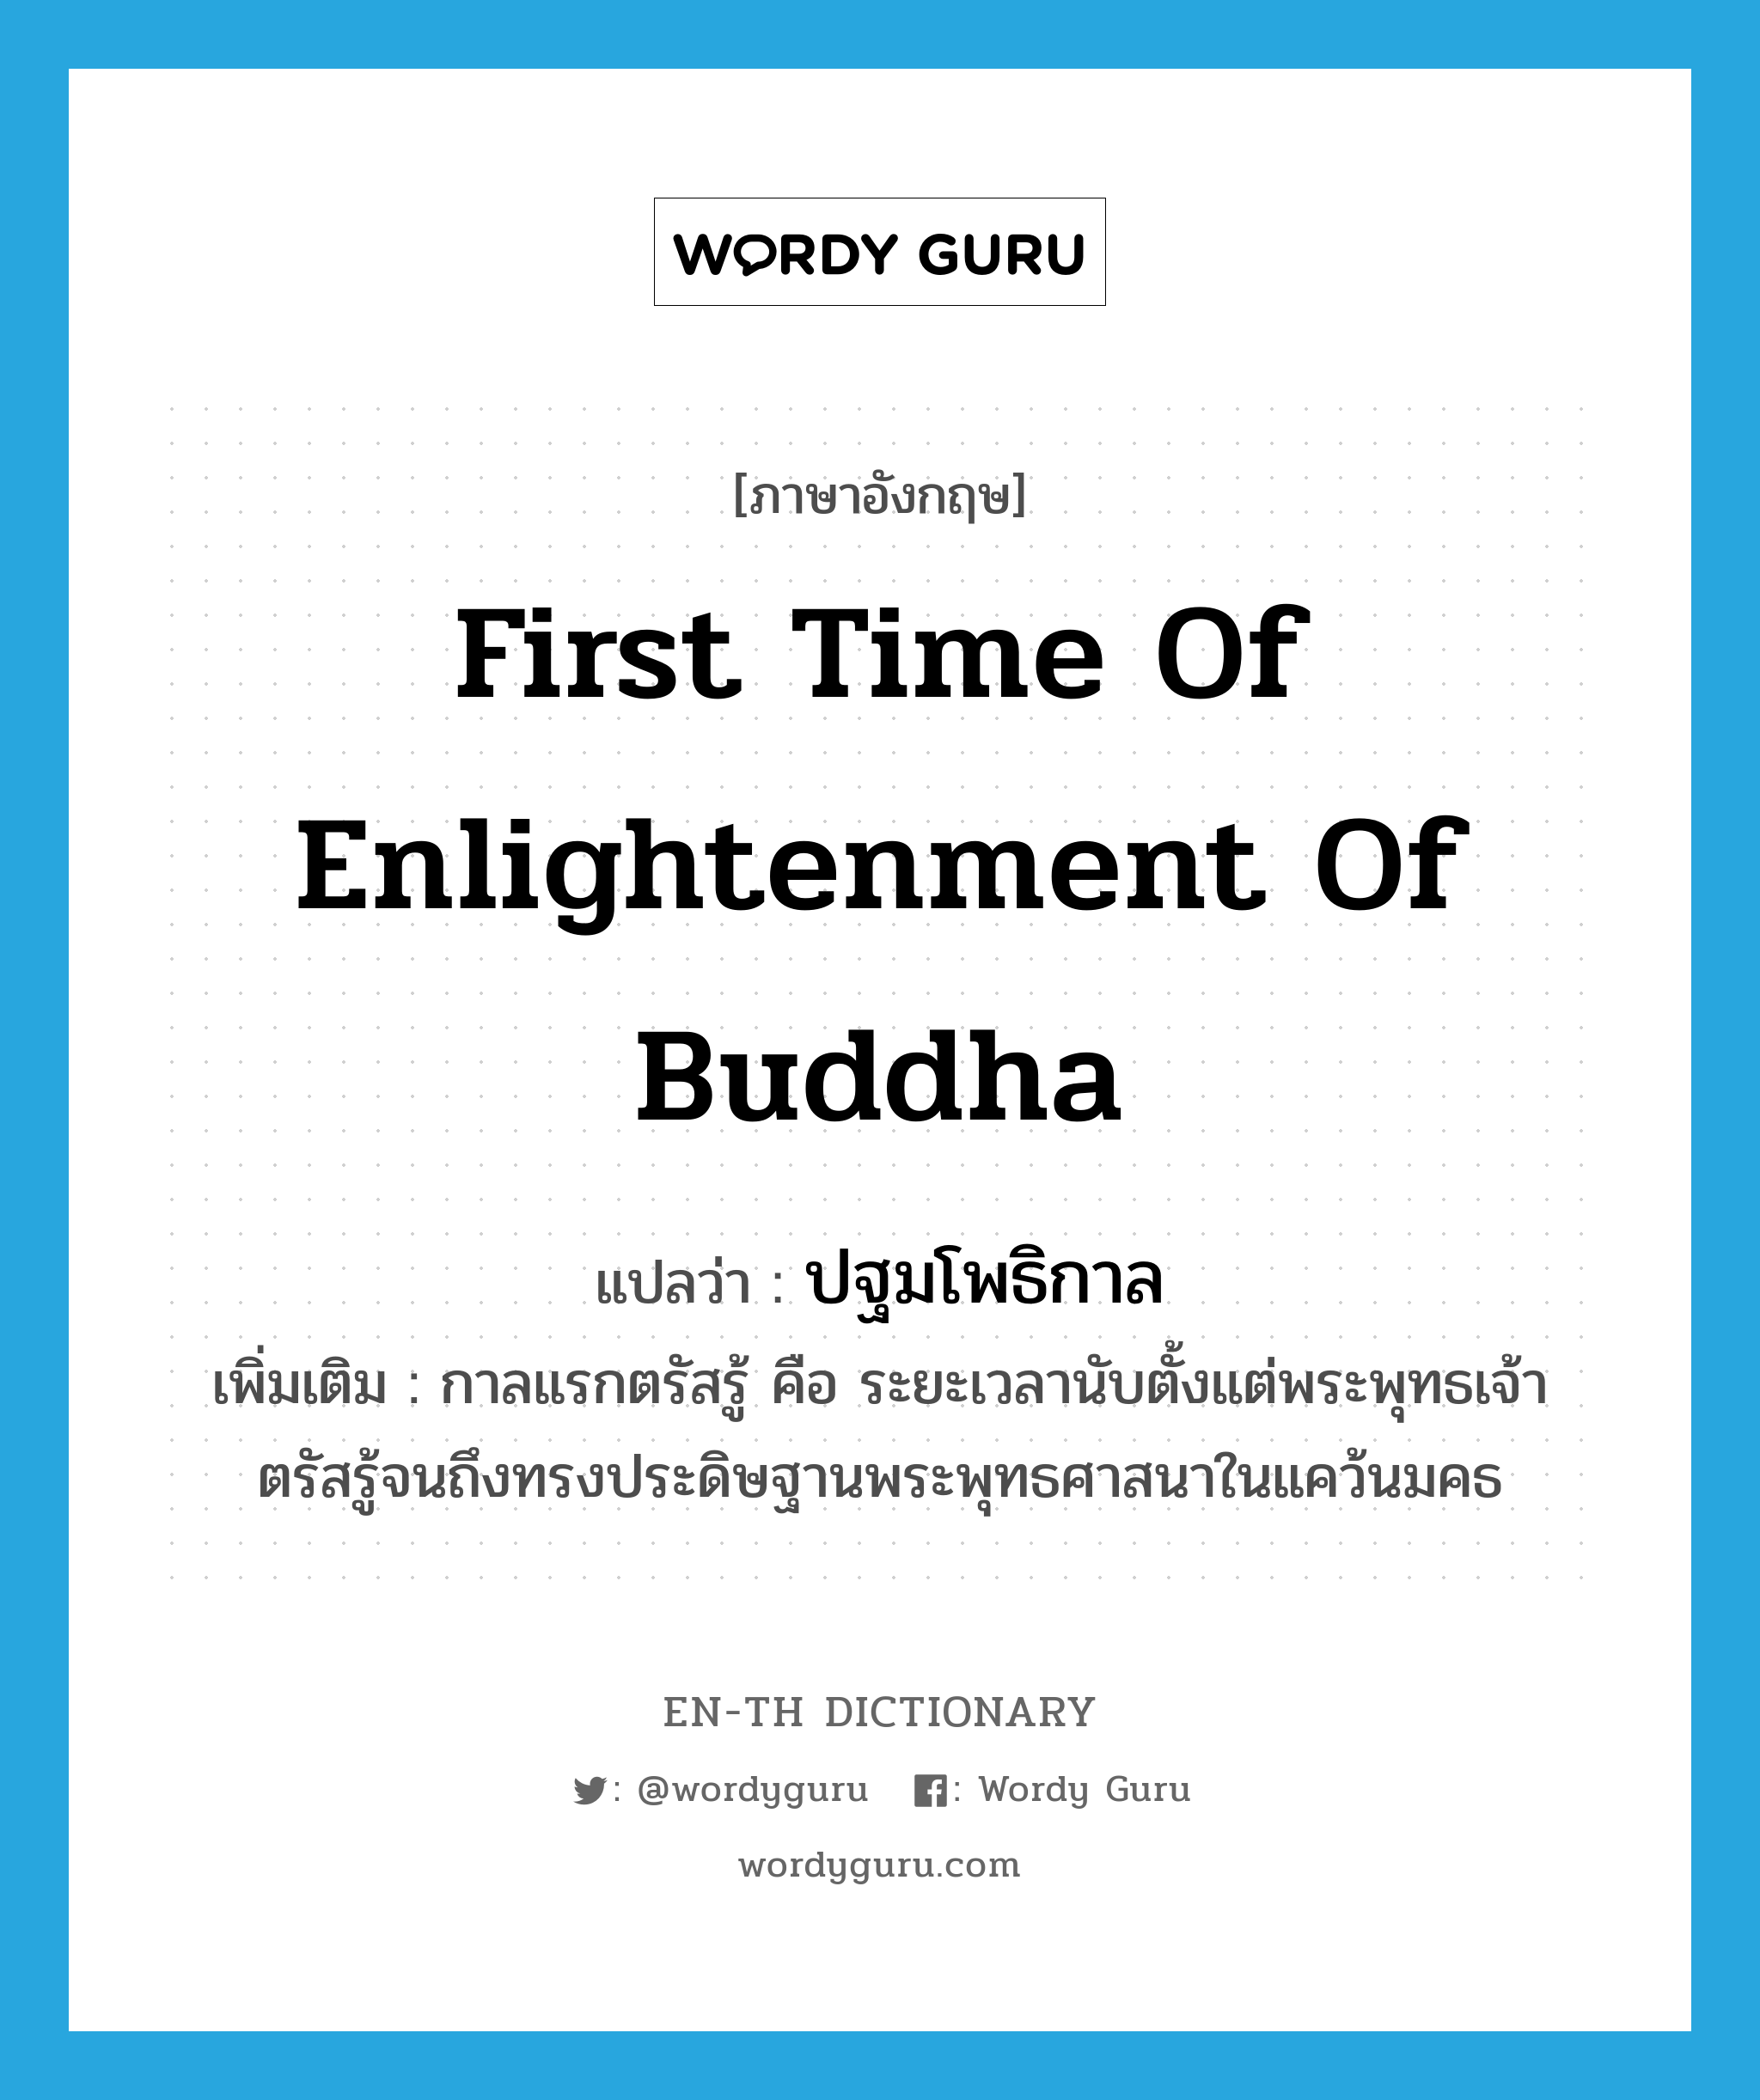 first time of enlightenment of Buddha แปลว่า?, คำศัพท์ภาษาอังกฤษ first time of enlightenment of Buddha แปลว่า ปฐมโพธิกาล ประเภท N เพิ่มเติม กาลแรกตรัสรู้ คือ ระยะเวลานับตั้งแต่พระพุทธเจ้าตรัสรู้จนถึงทรงประดิษฐานพระพุทธศาสนาในแคว้นมคธ หมวด N